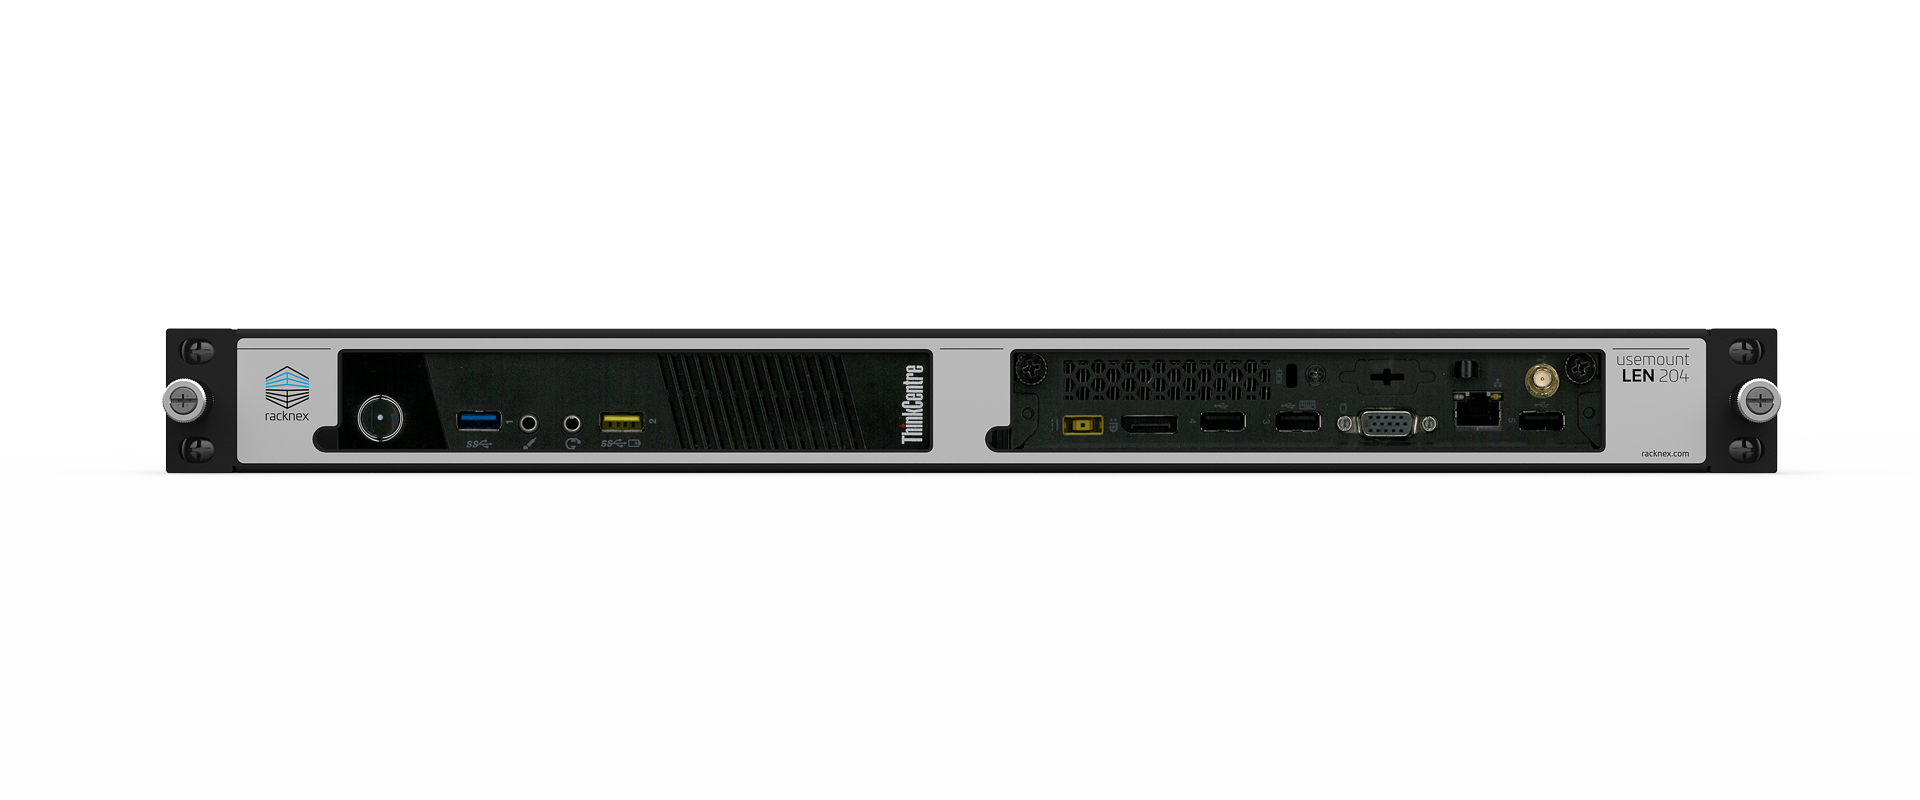 Lenovo ThinkCentre rackmount kit - UM-LEN-204